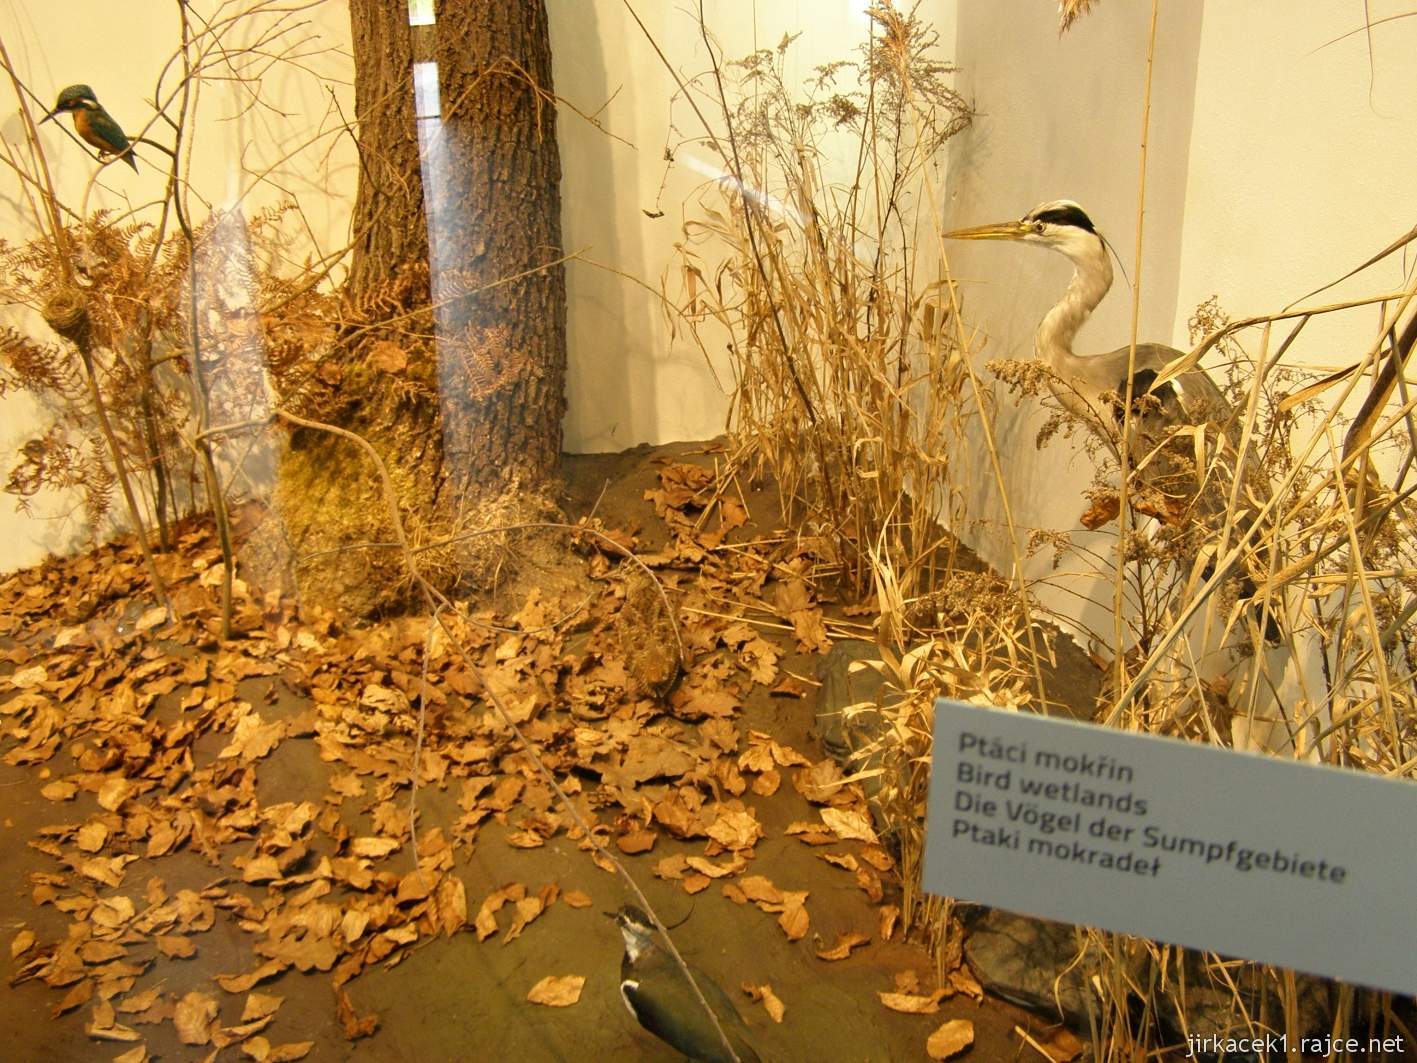 Rokytnice v Orlických horách - muzeum Orlických hor - expozice přírody - ptáci mokřin